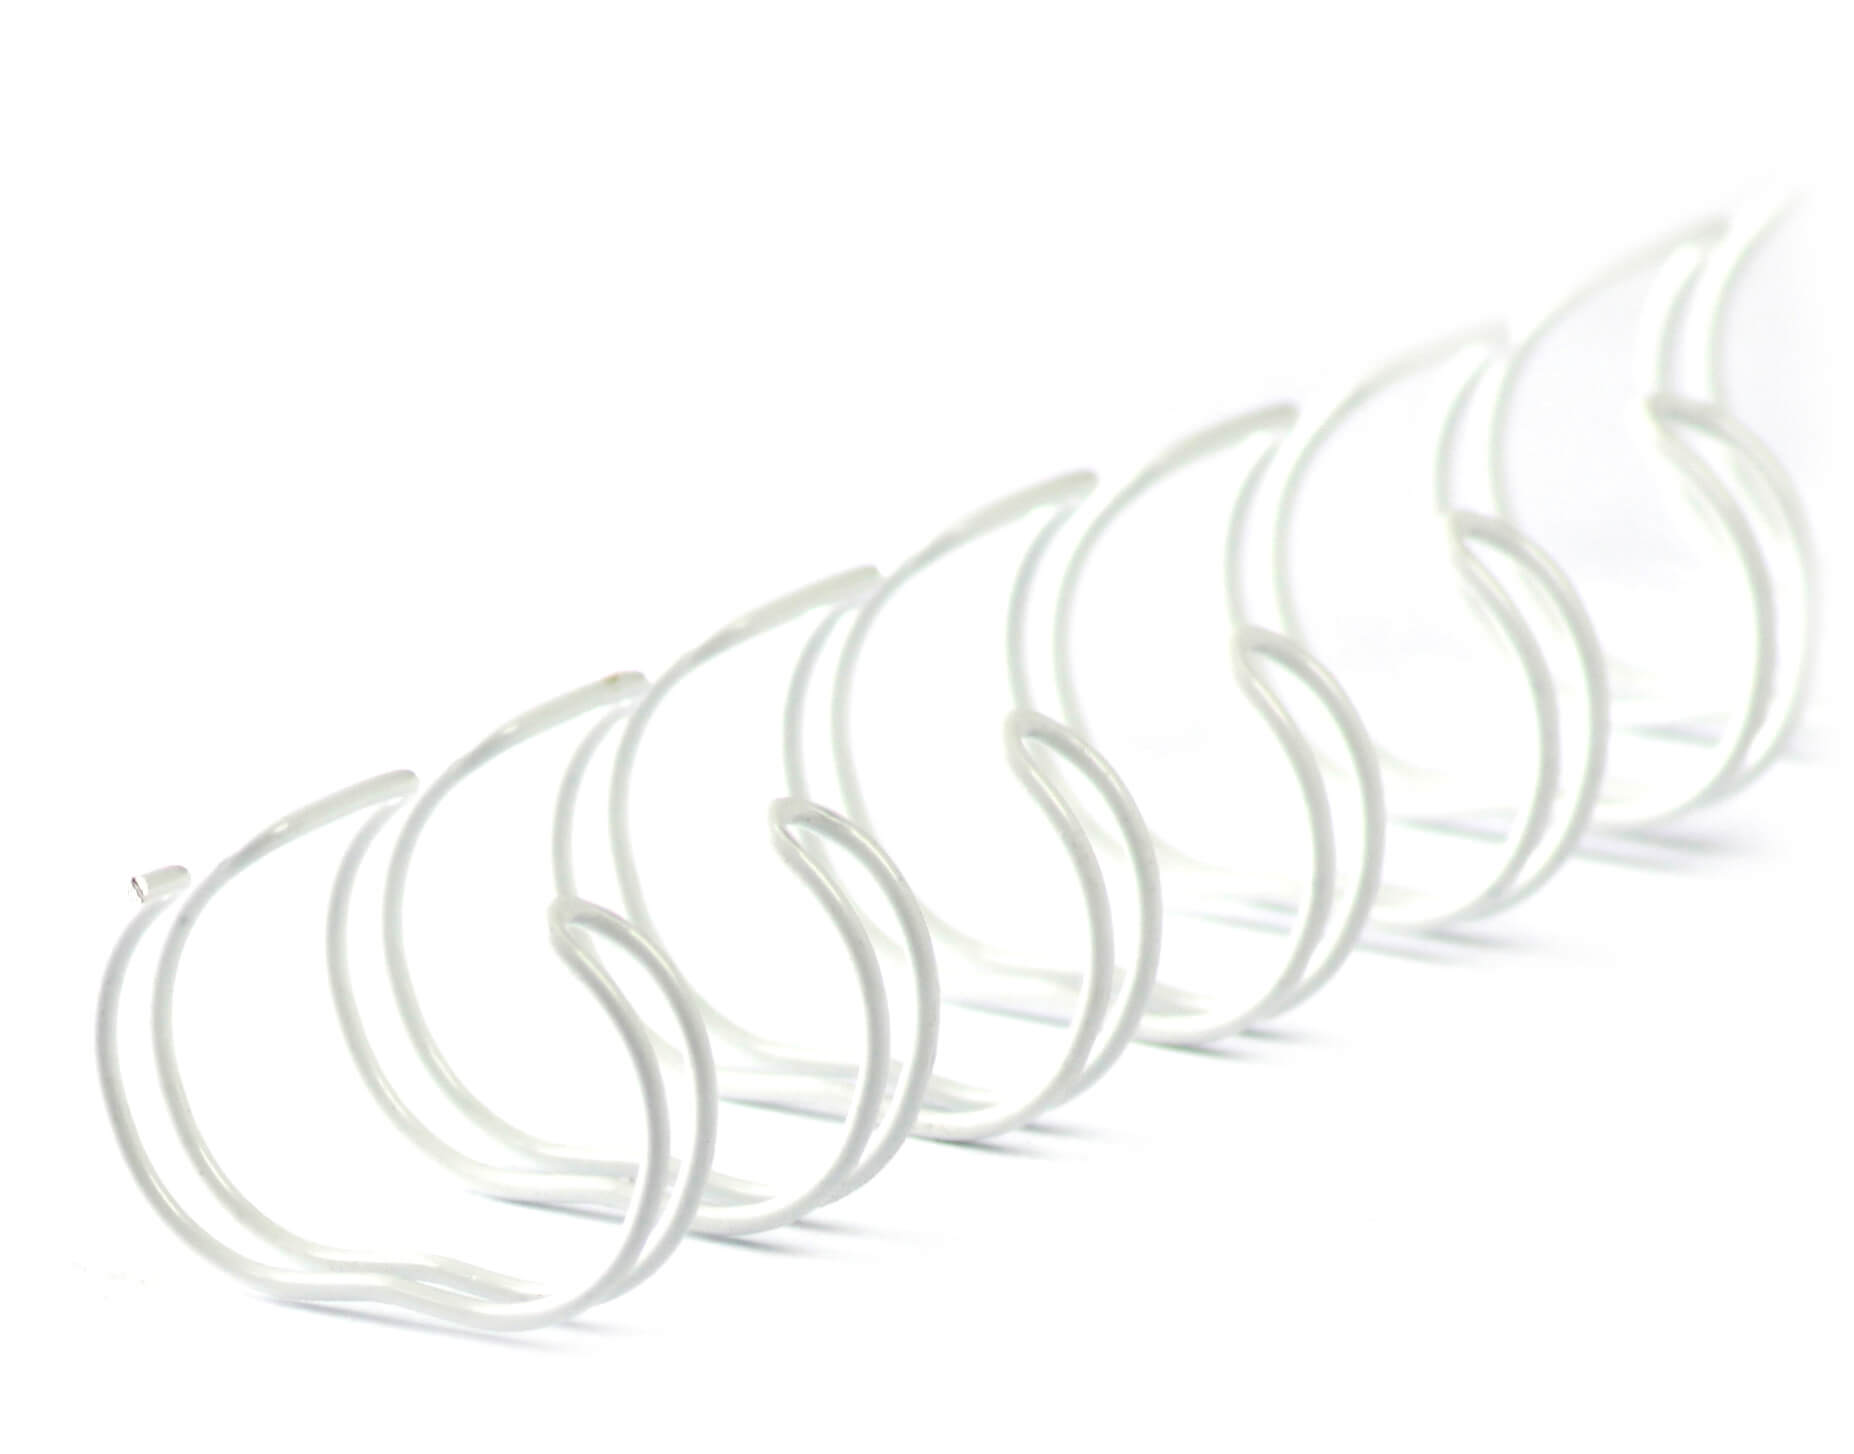 Drahtbinderücken 24 Ringe DIN A5, Ø11 mm, 7/16“ weiß | Bestnr. 24RM111-WS